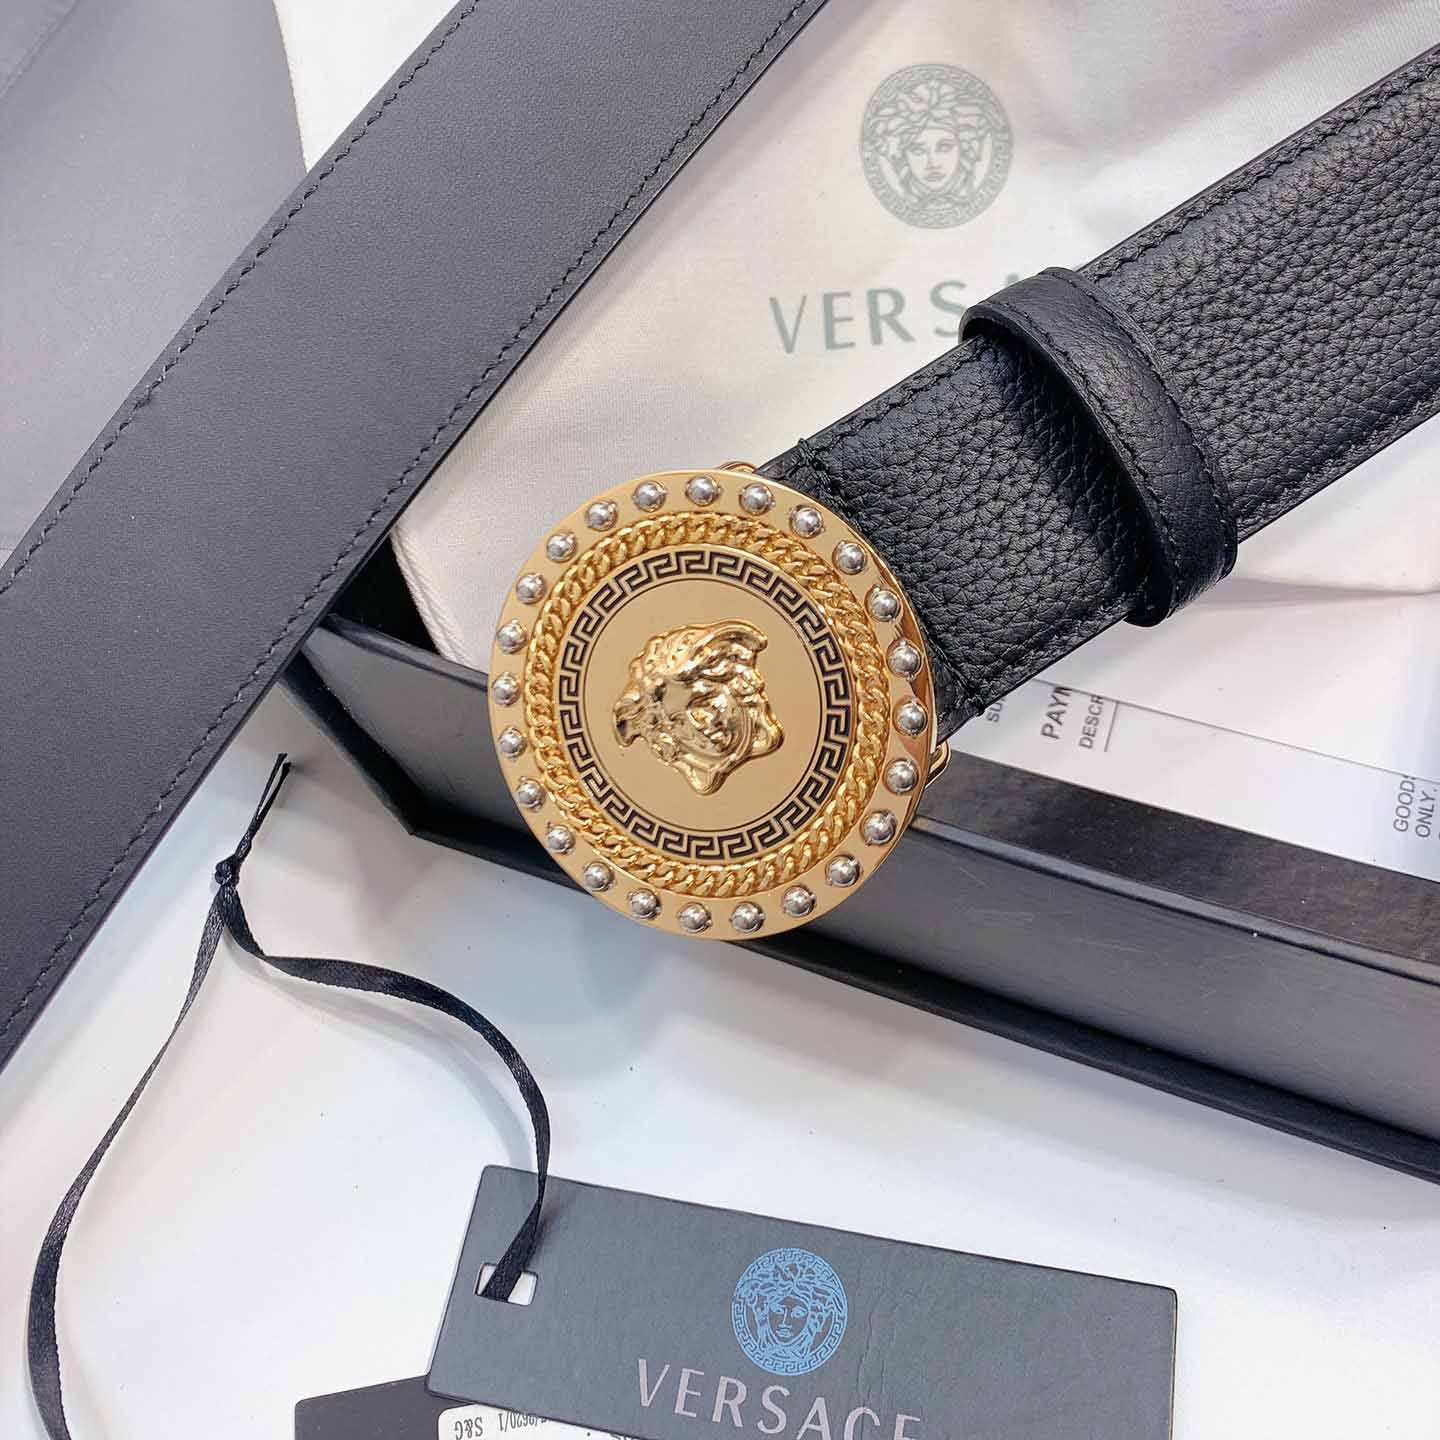 Thắt lưng Versace siêu cấp khóa tròn họa tiết đính ốc màu vàng